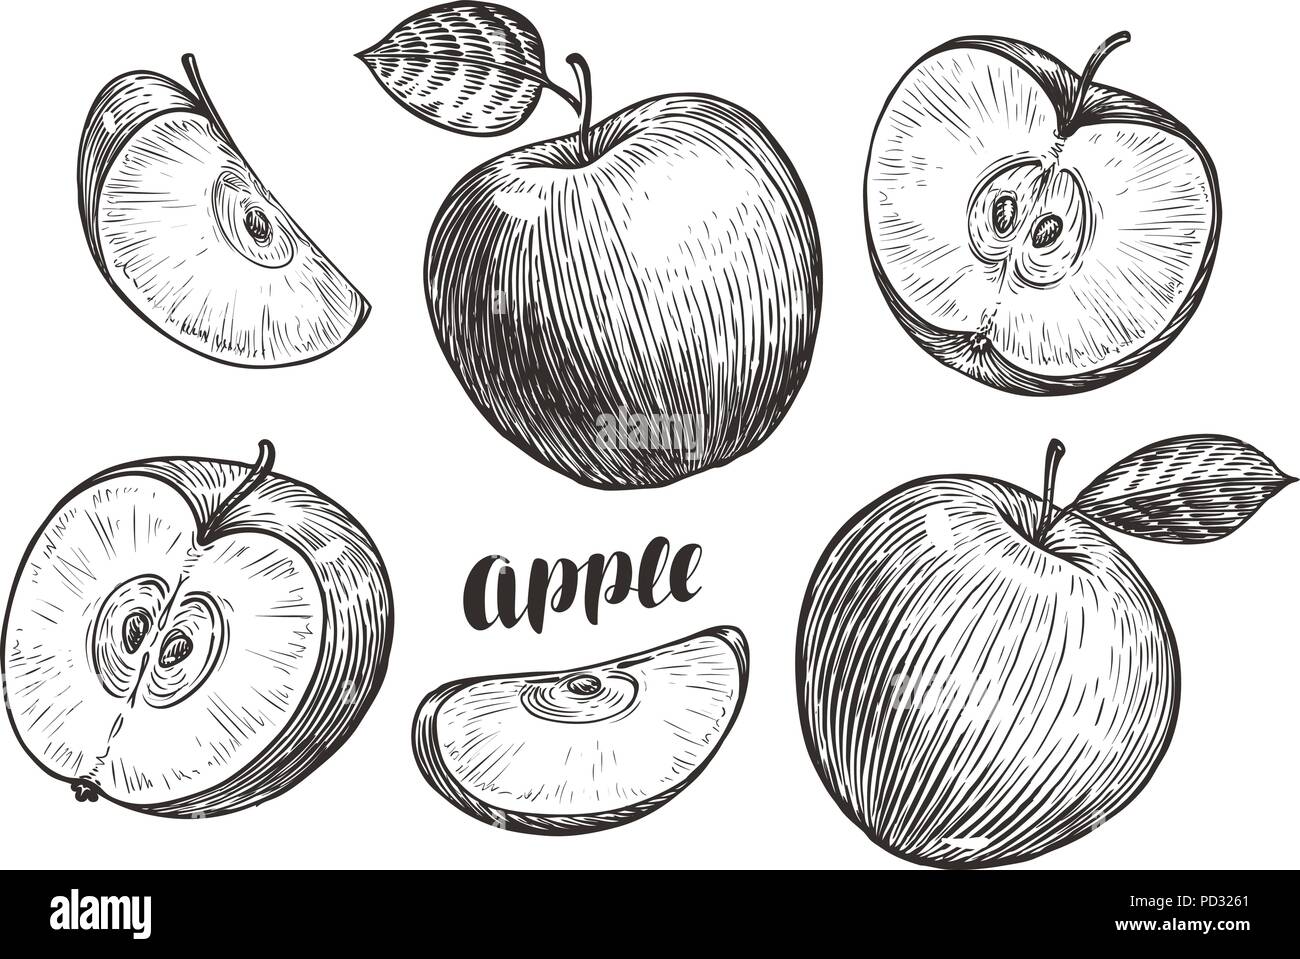 Handgezeichneten Äpfel und Schichten, Skizze. Obst Konzept. Vintage Vector Illustration Stock Vektor